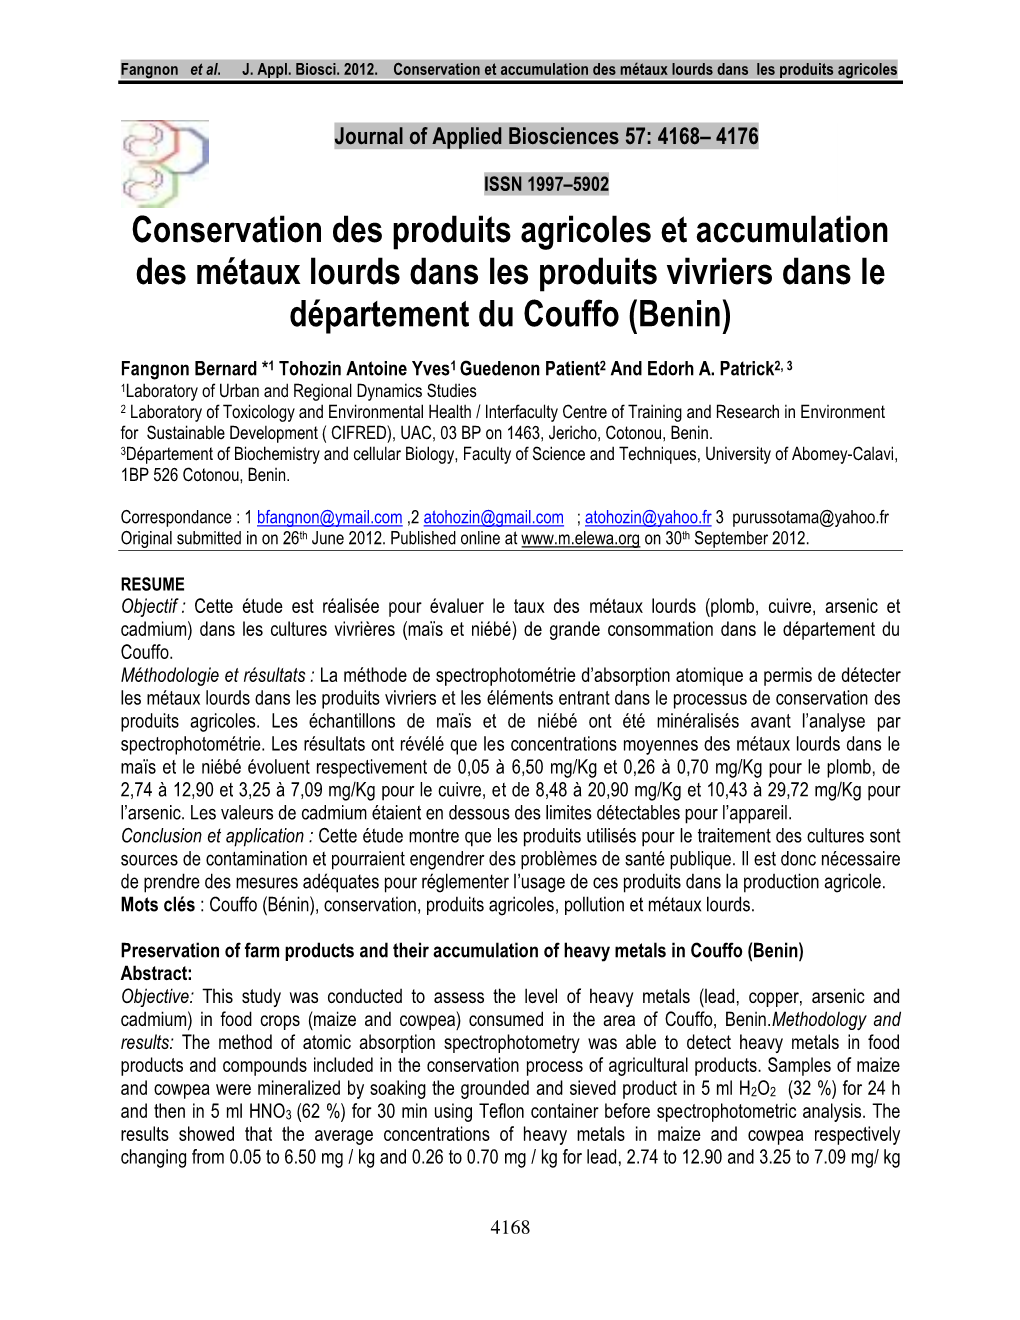 Conservation Des Produits Agricoles Et Accumulation Des Métaux Lourds Dans Les Produits Vivriers Dans Le Département Du Couffo (Benin)